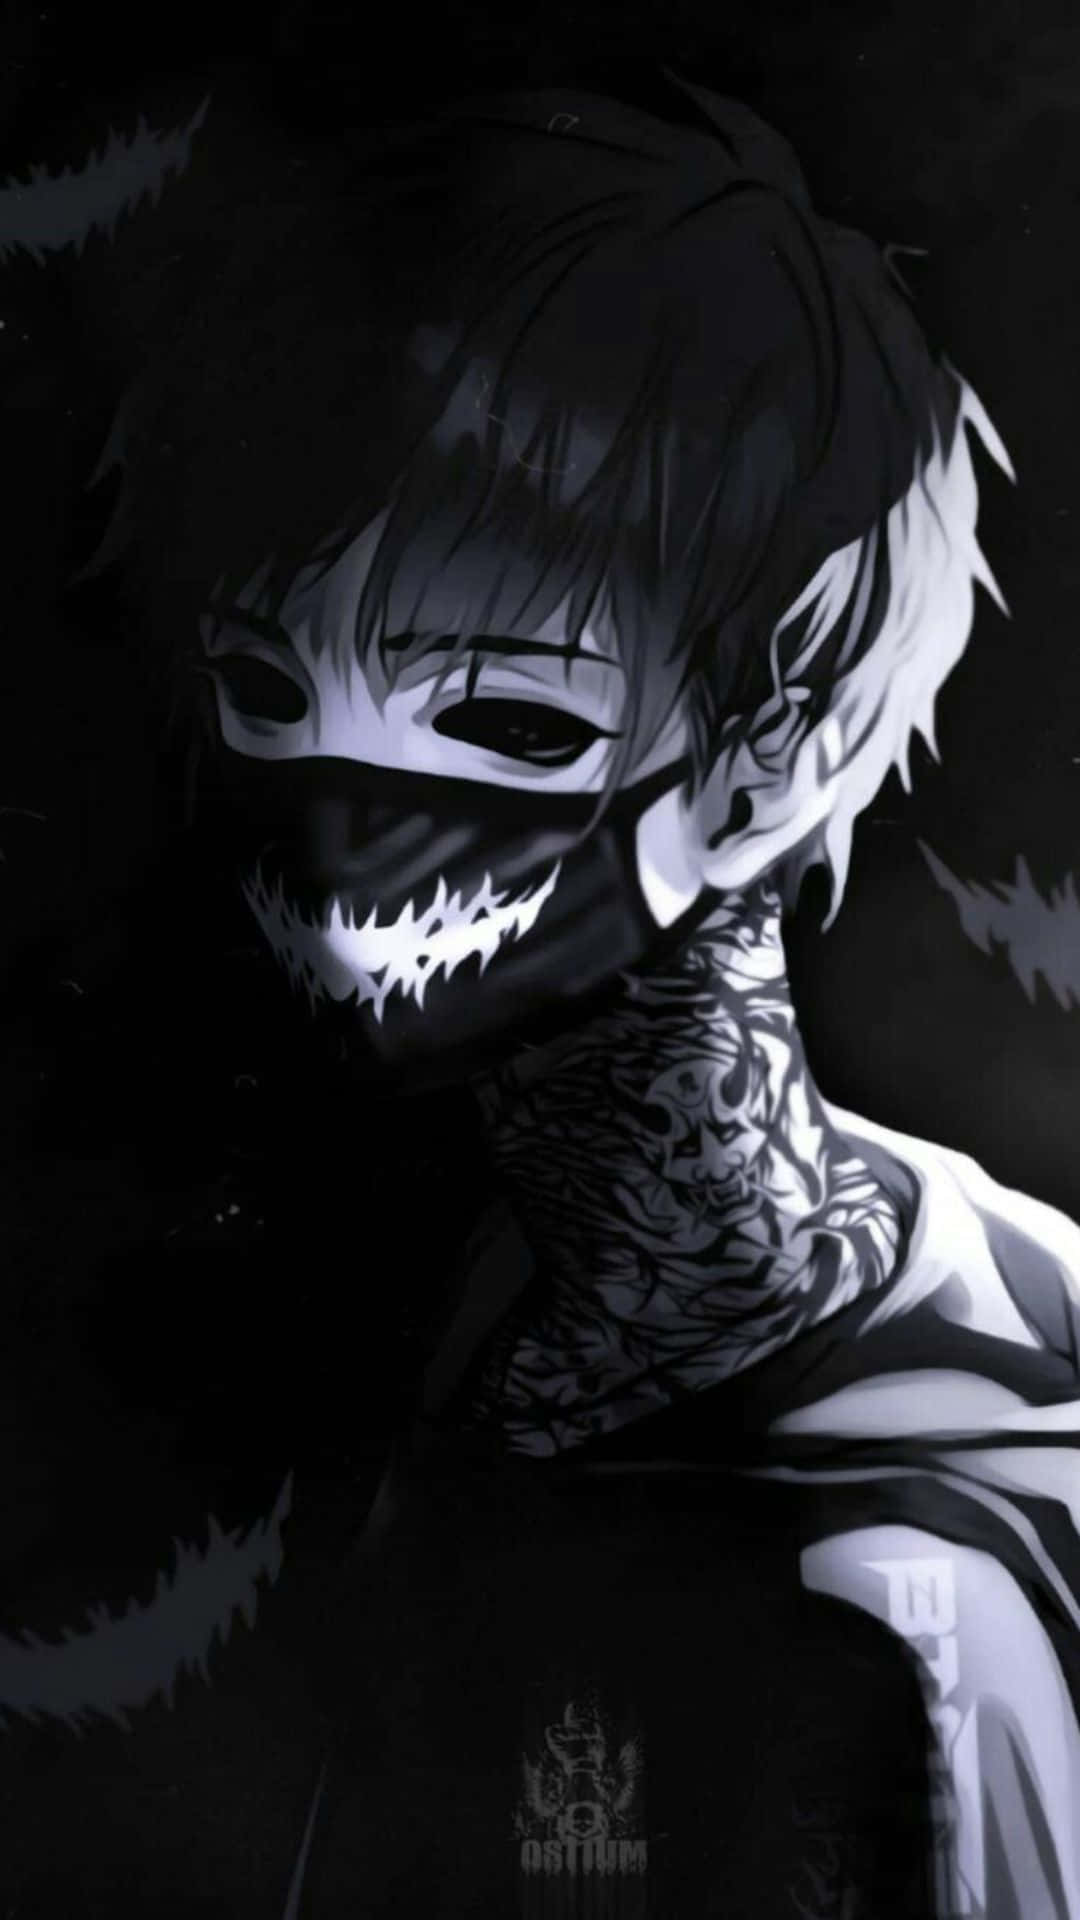 Free Dark Anime Boy Wallpaper Downloads, [100+] Dark Anime Boy Wallpapers  for FREE 